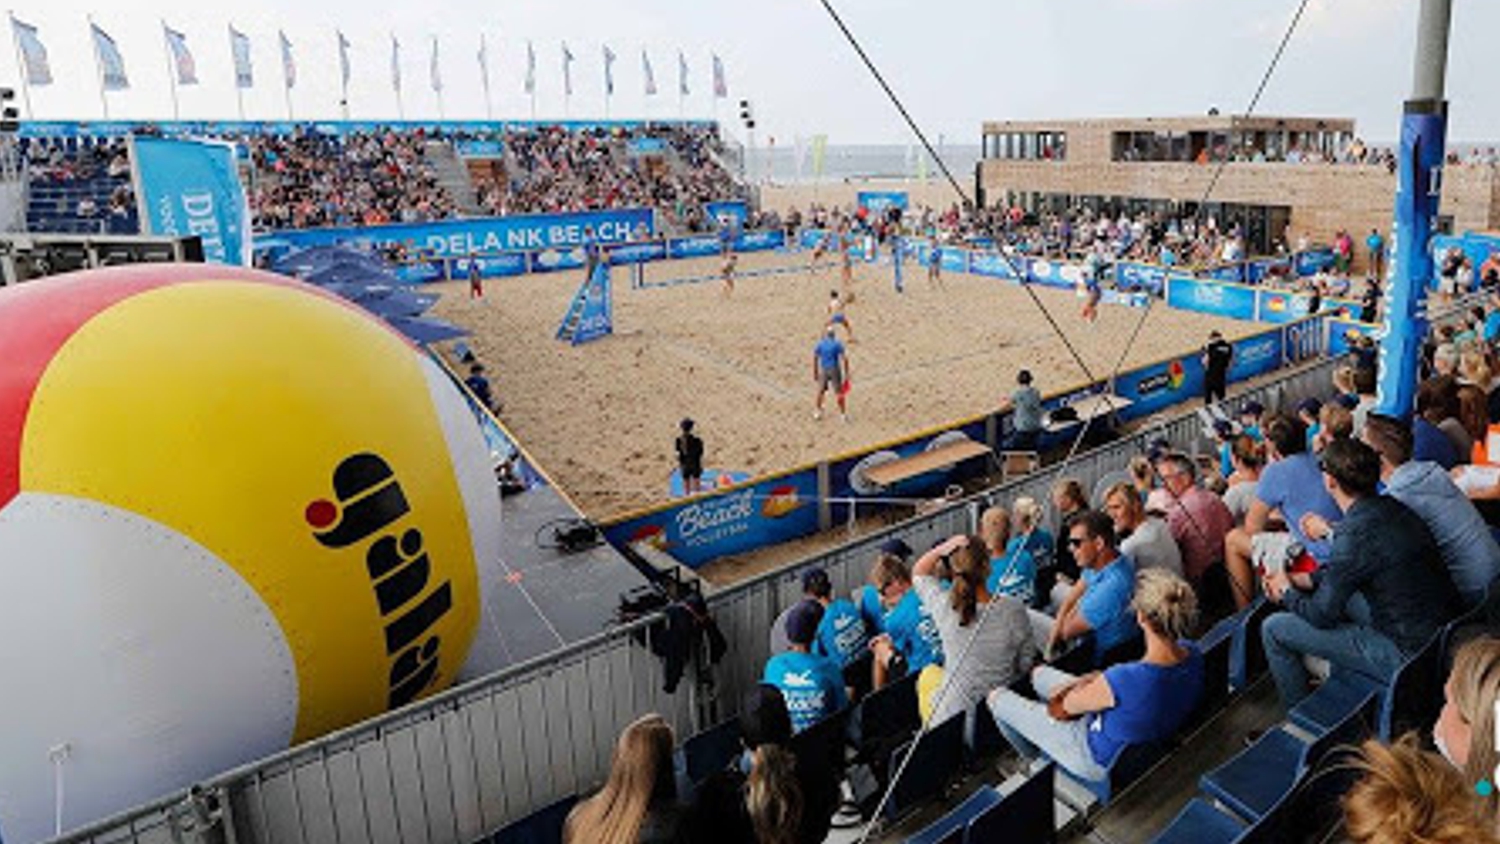 Gala opblaasbare volleybal sportmarketing beach volleyball tournooi – Publiair